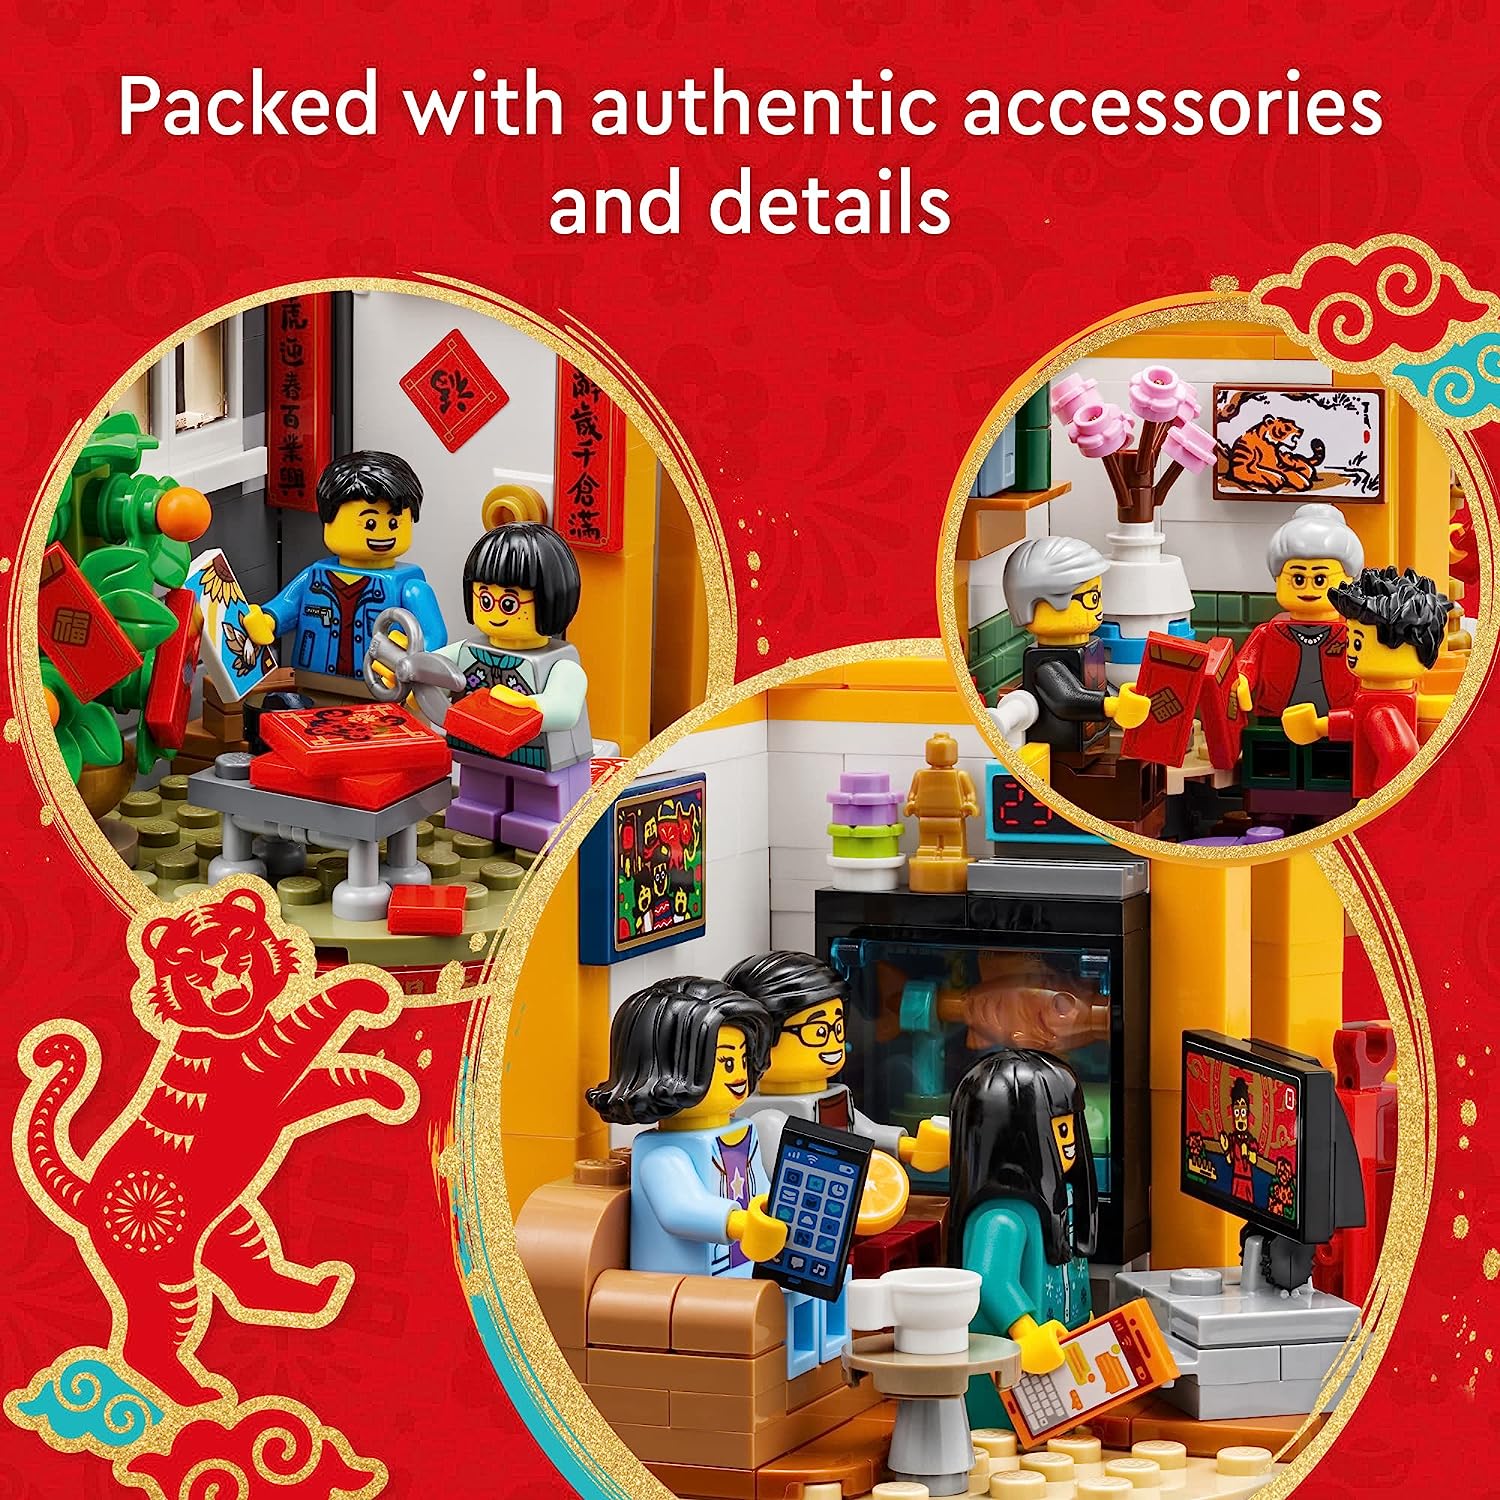 激安通販の 無料ラッピングでプレゼントや贈り物にも 逆輸入並行輸入送料込 レゴ LEGO Lunar New Year Traditions  80108 Building Kit; Gift Toy for Kids Aged 8 and Up; Set Featuring 6  Festive Scenes 12 Minifigures Including The God of Wealth